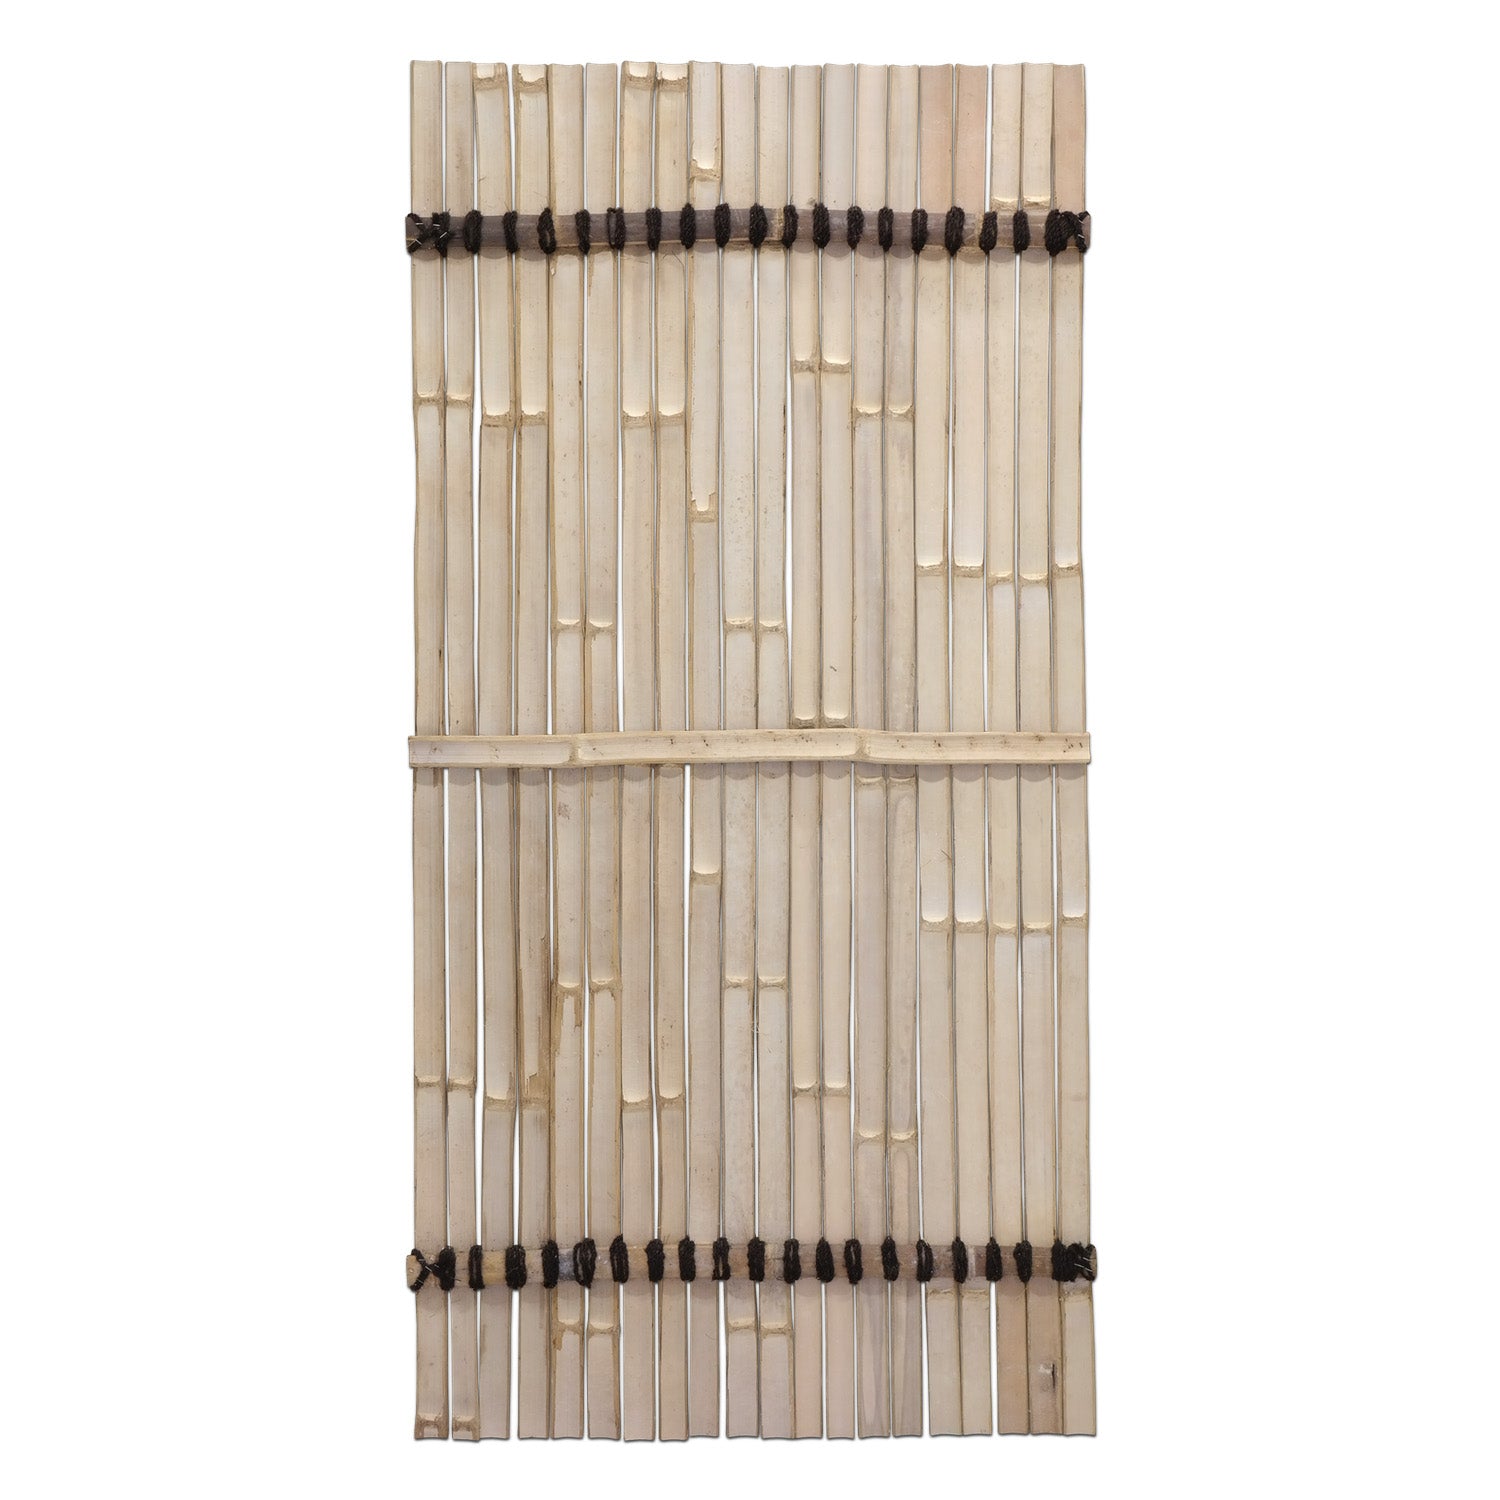 Bambus-Zaun Latten Dunkel